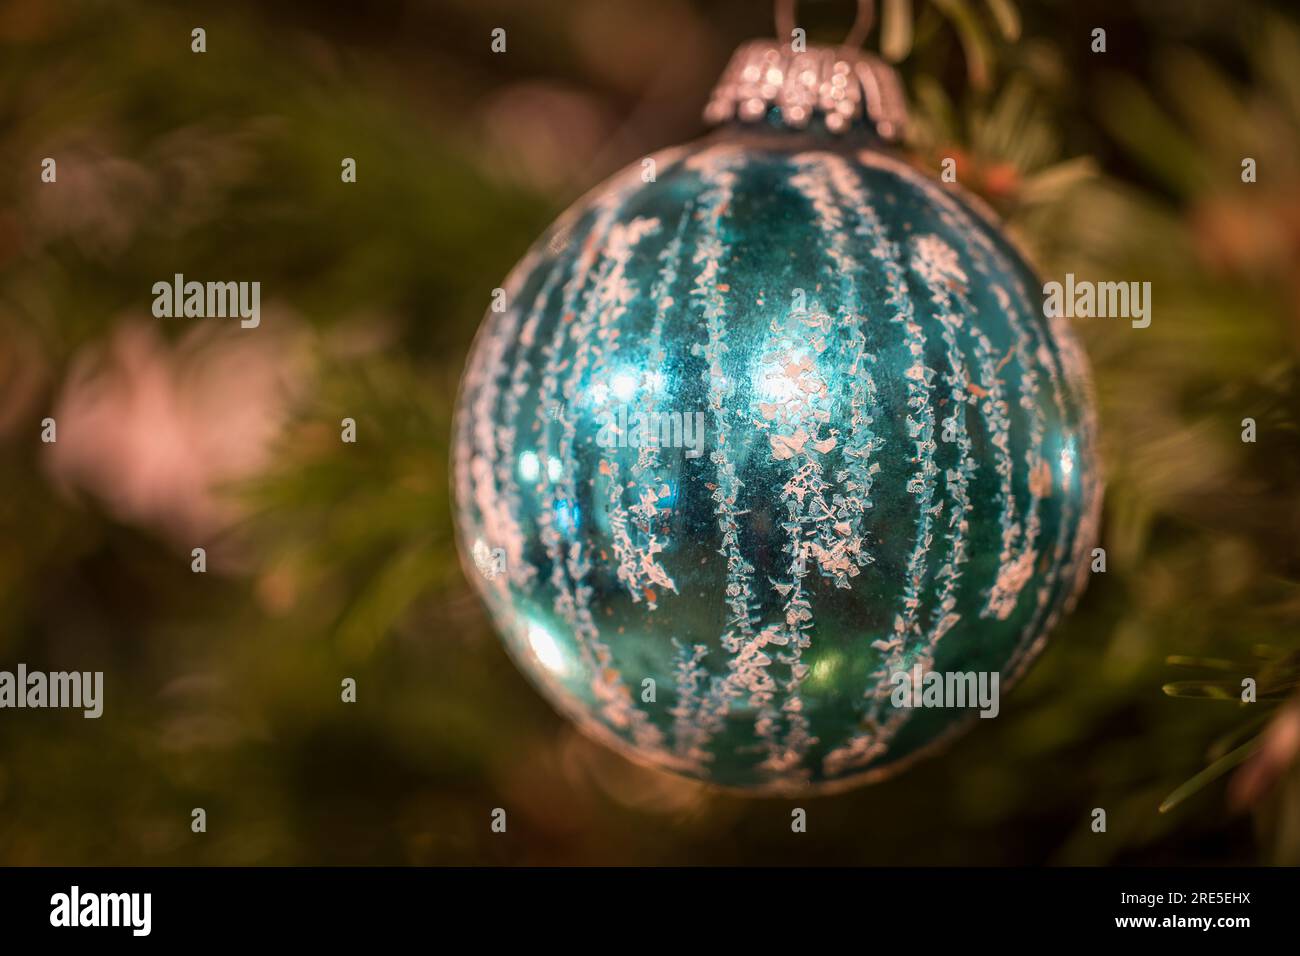 Weihnachtsschmuck - Weihnachtskugeln - Baumschmuck - Glaskugeln - Weihnachten Stockfoto